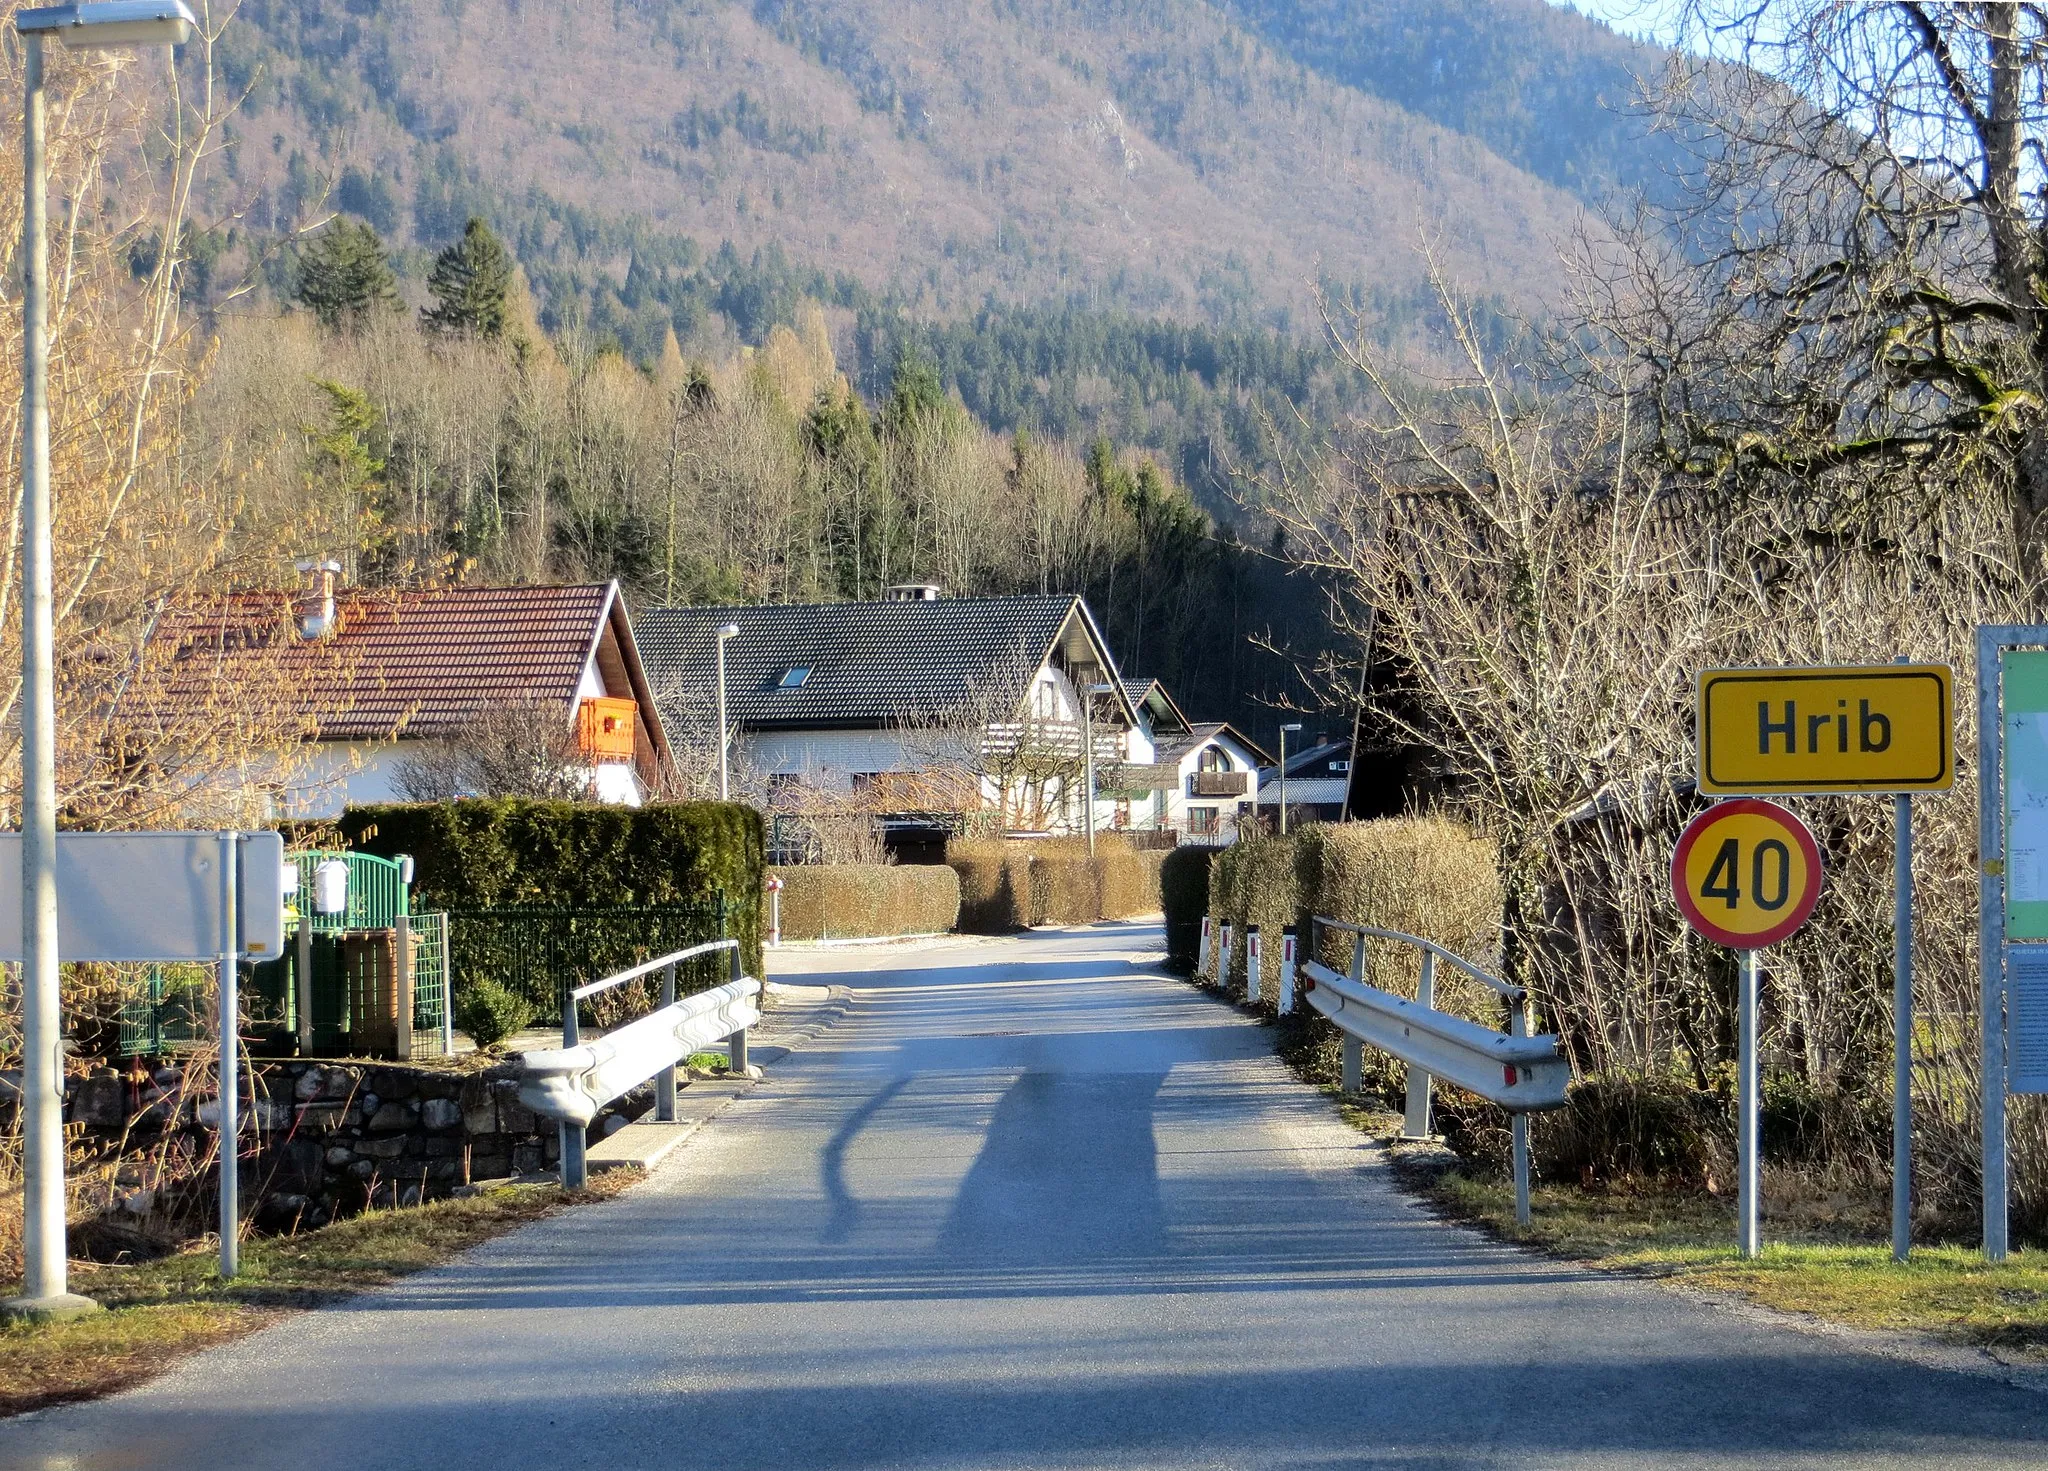 Photo showing: Hrib, municipality of Preddvor, Slovenia